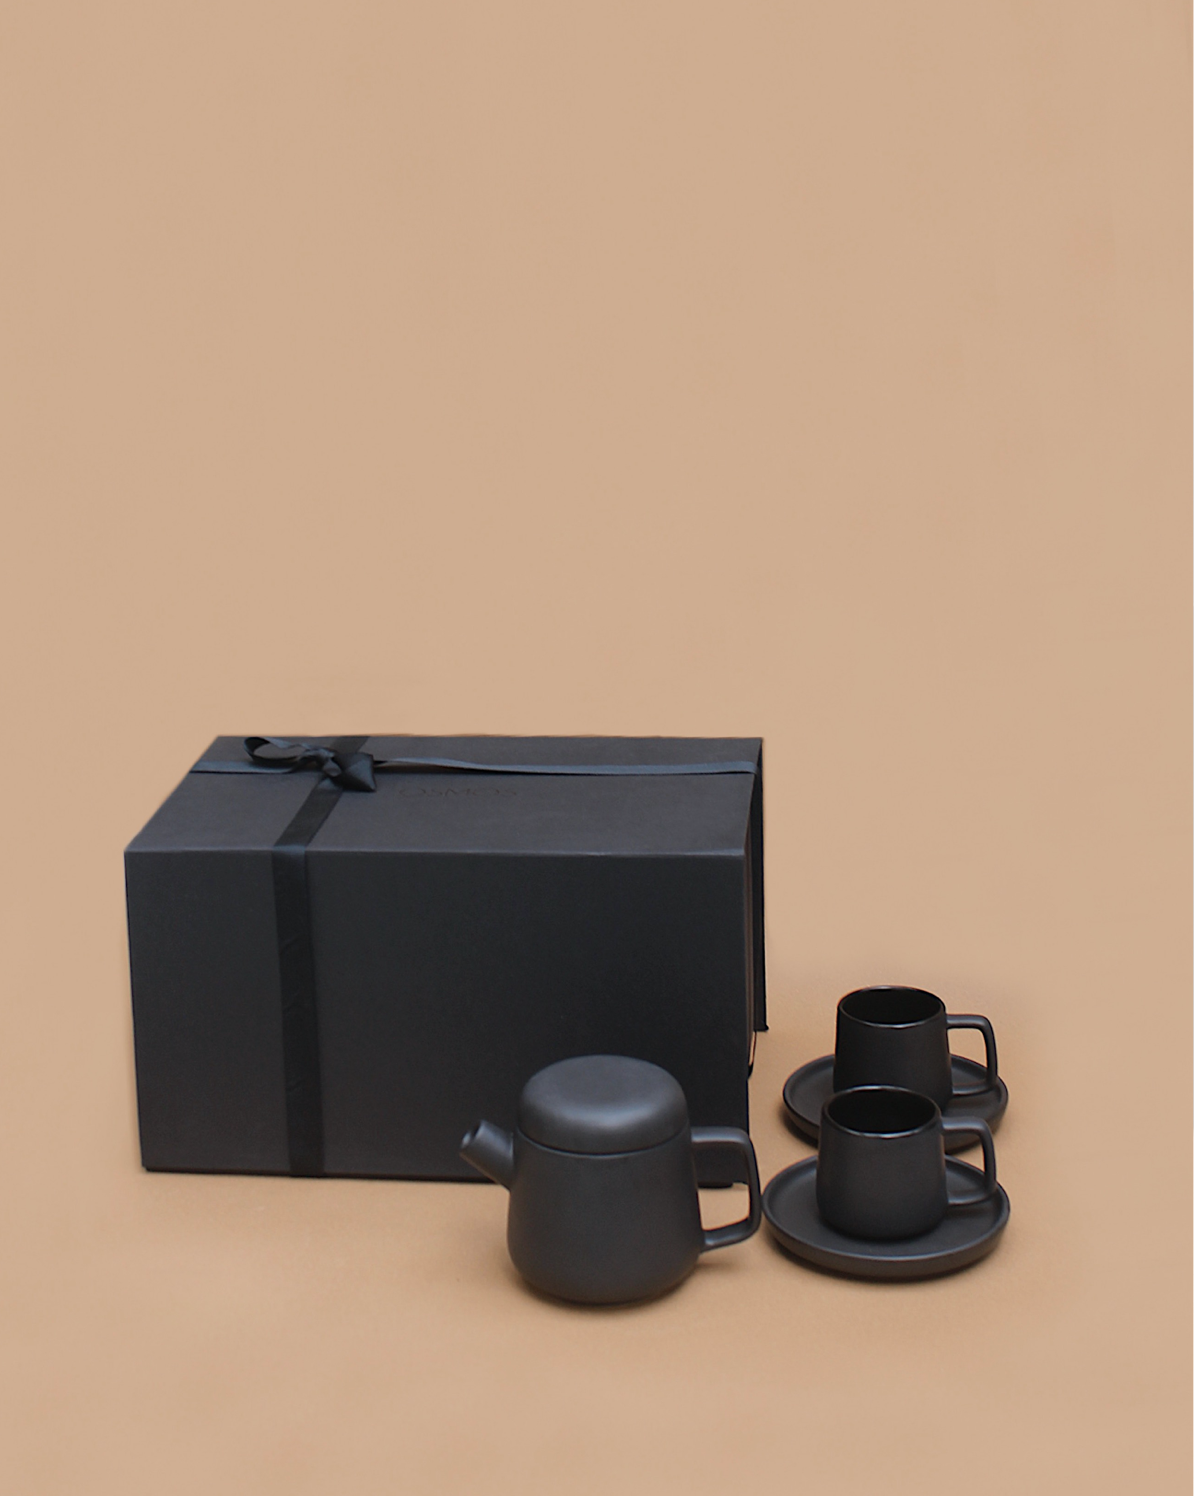 Kanso Tea Set with Gift Box (1 Tea Pot + 2 cups + 2 saucers)